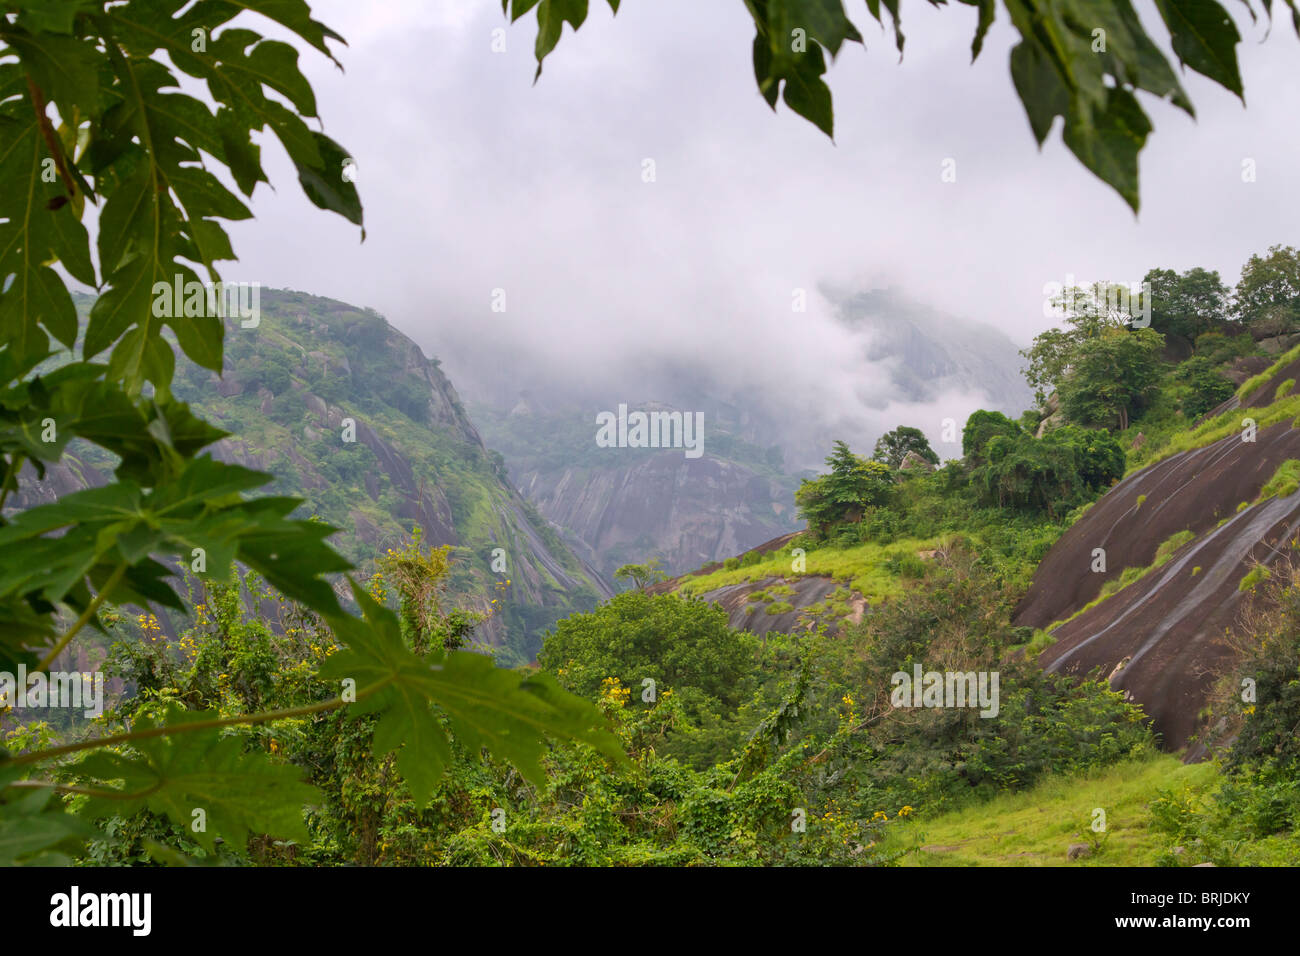 Una montagna foresta pluviale, Idanre, Ondo stato, Nigeria. Foto Stock